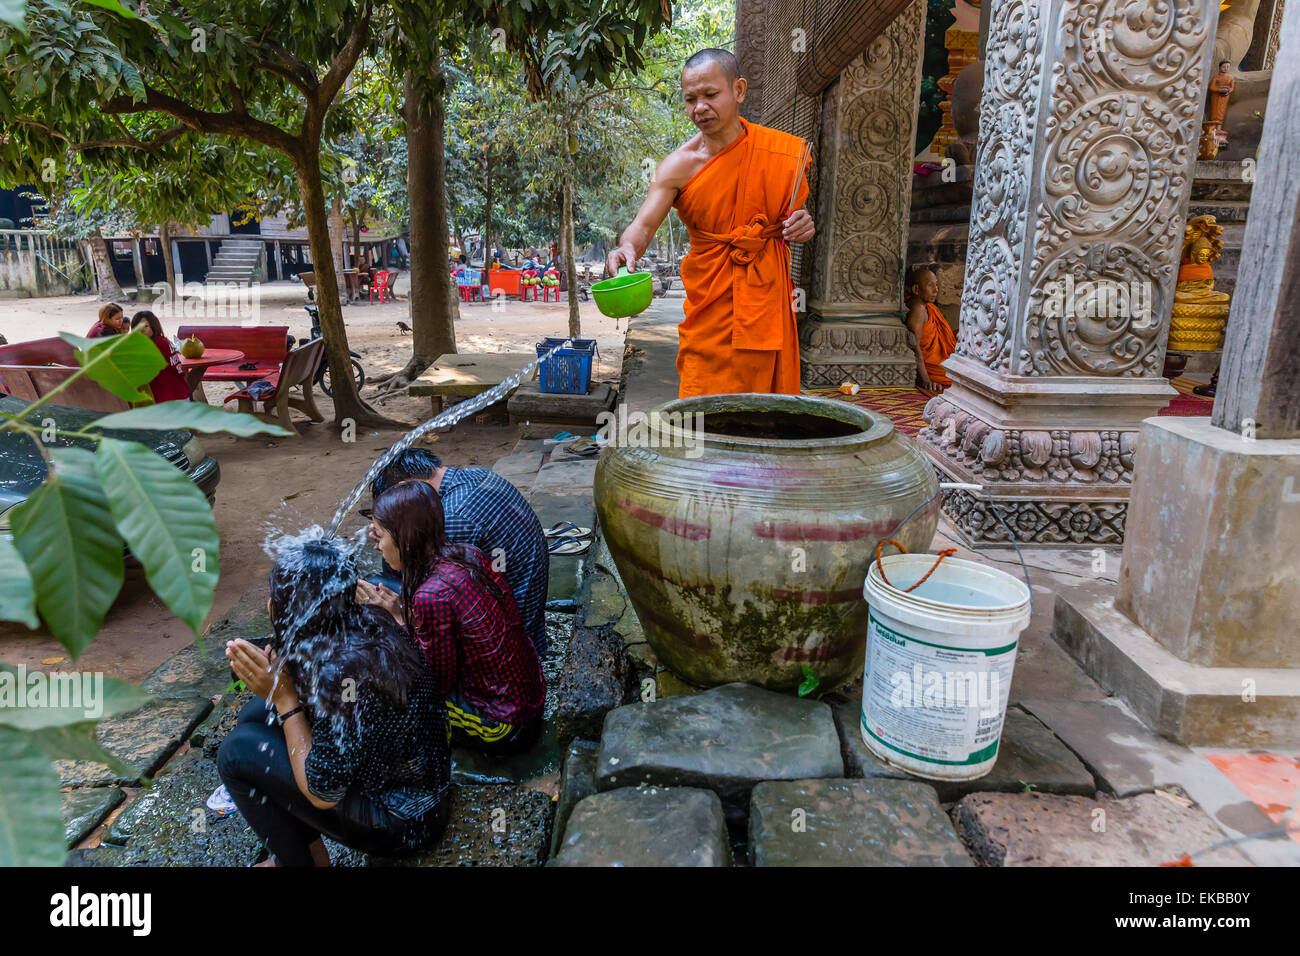 Bénédiction de l'eau offre un moine bouddhiste près de Prasat du Bayon, Angkor Thom, Angkor, la Province de Siem Reap, Cambodge, Indochine, Asie Banque D'Images